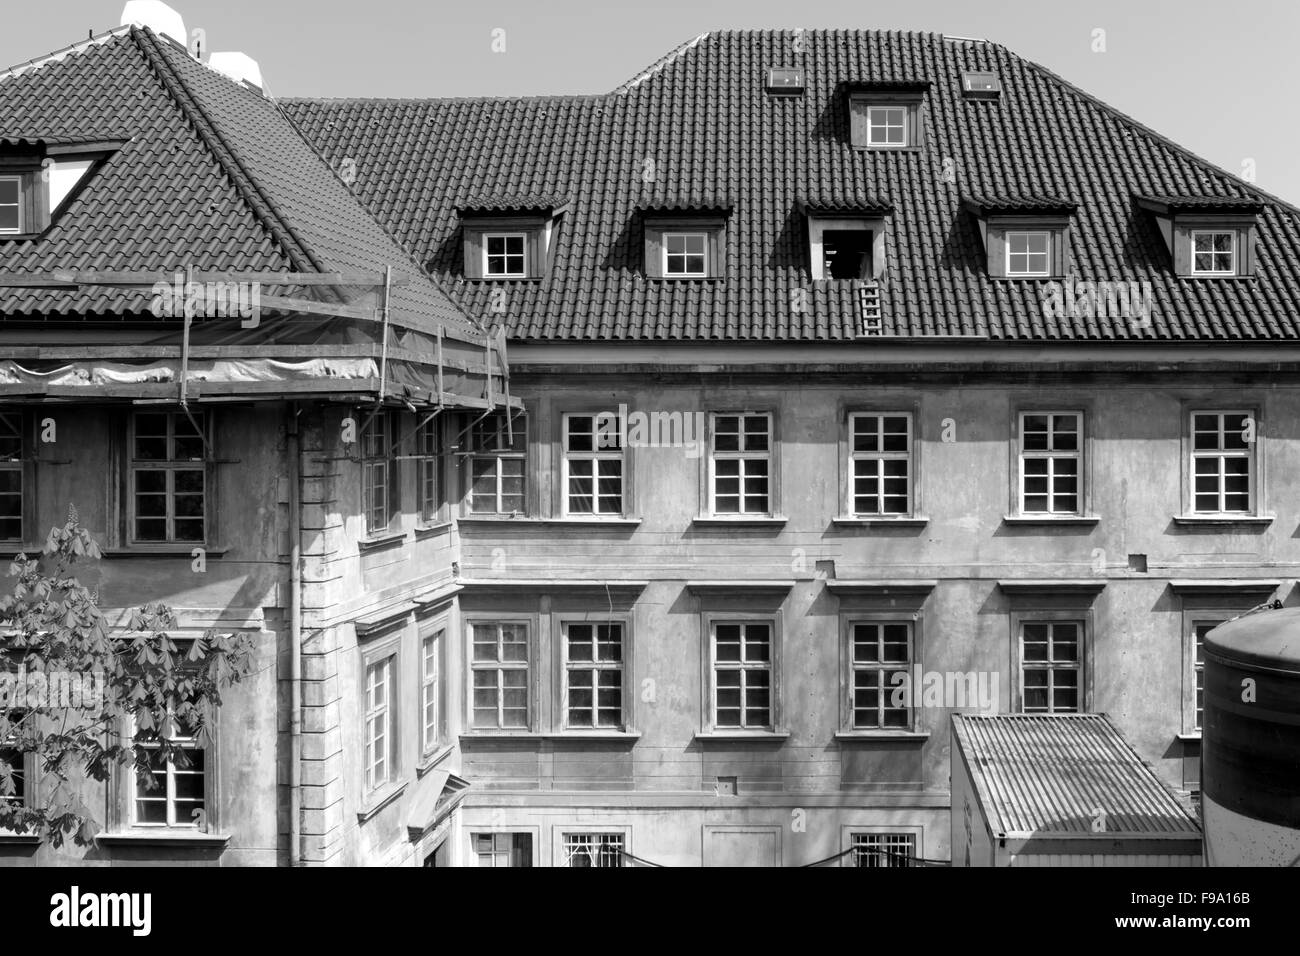 Bâtiment blanc et noir avec plein de windows Banque D'Images